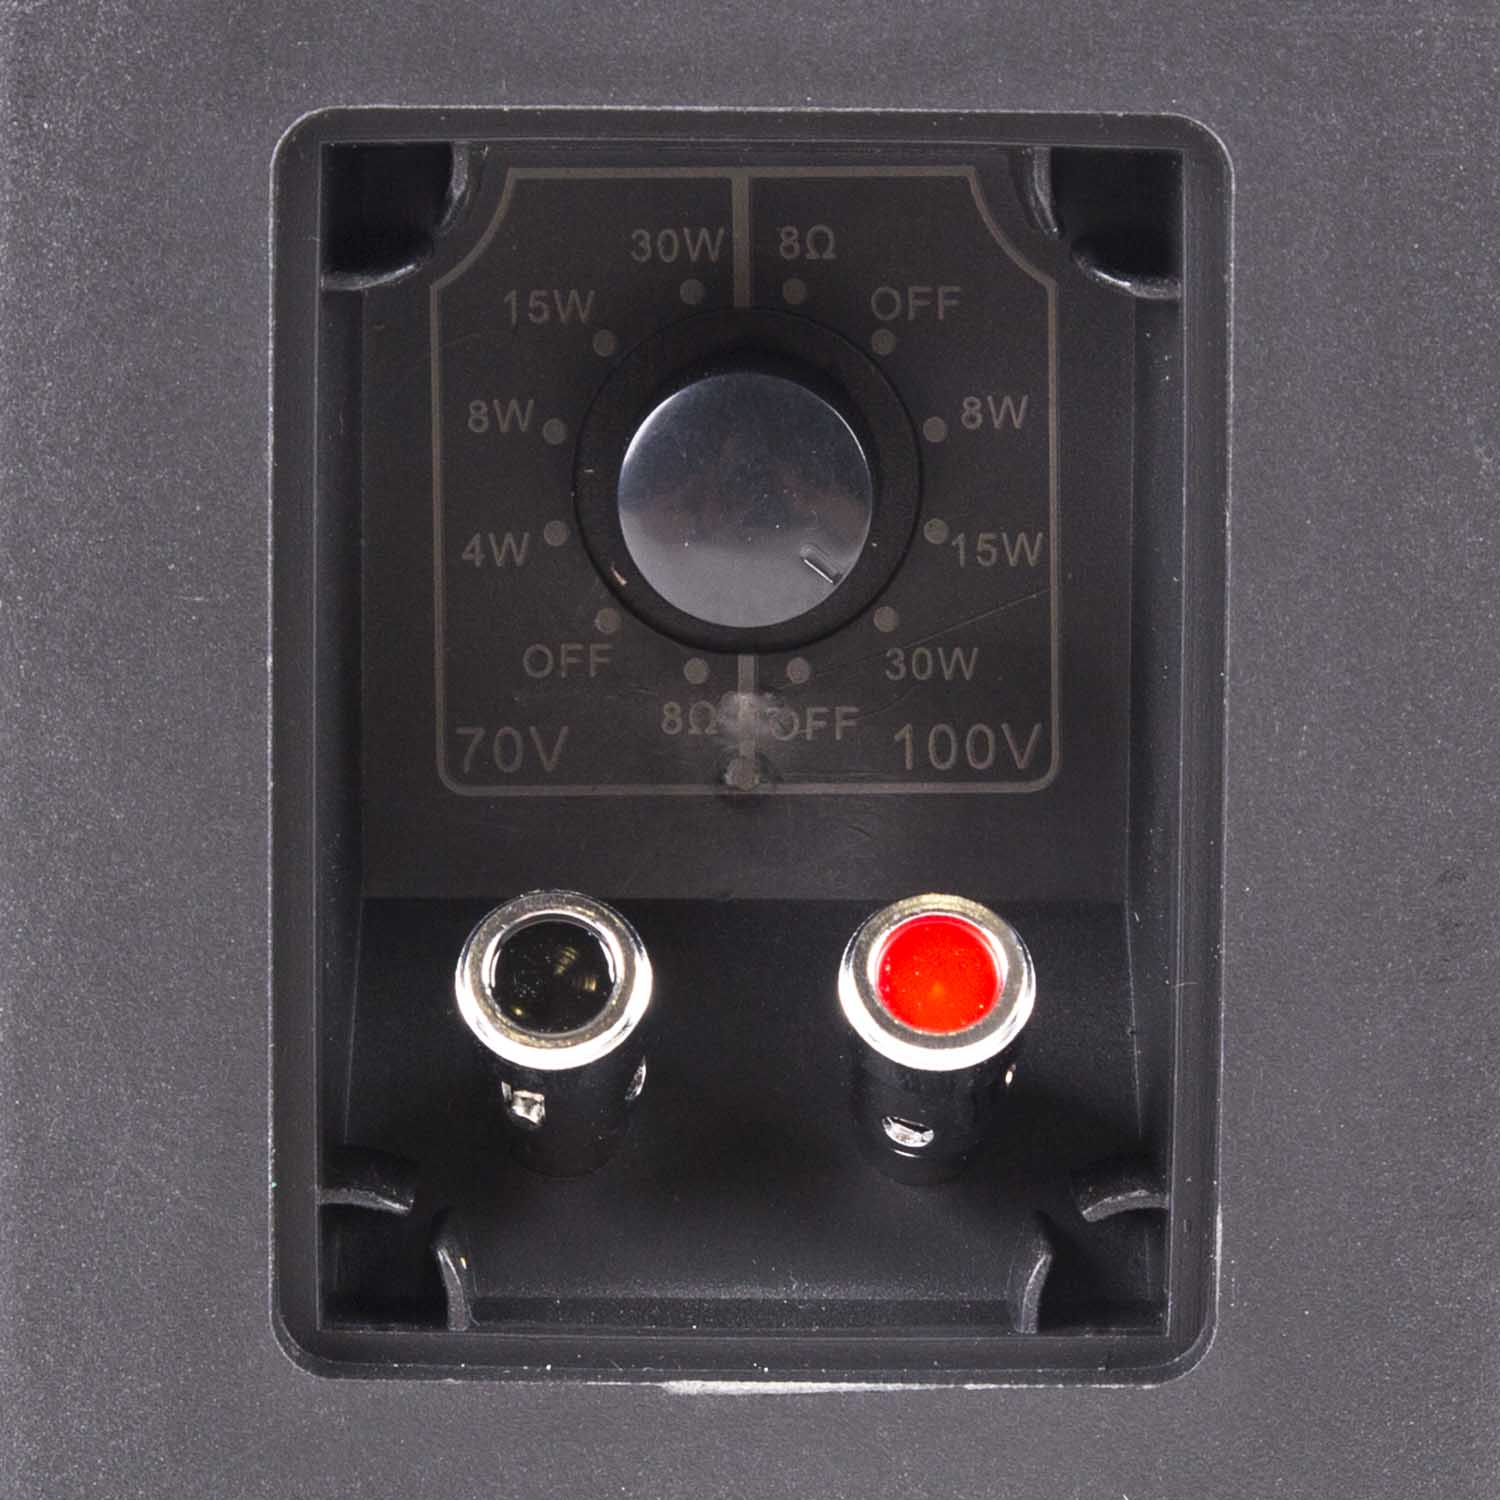 XB530B power switch